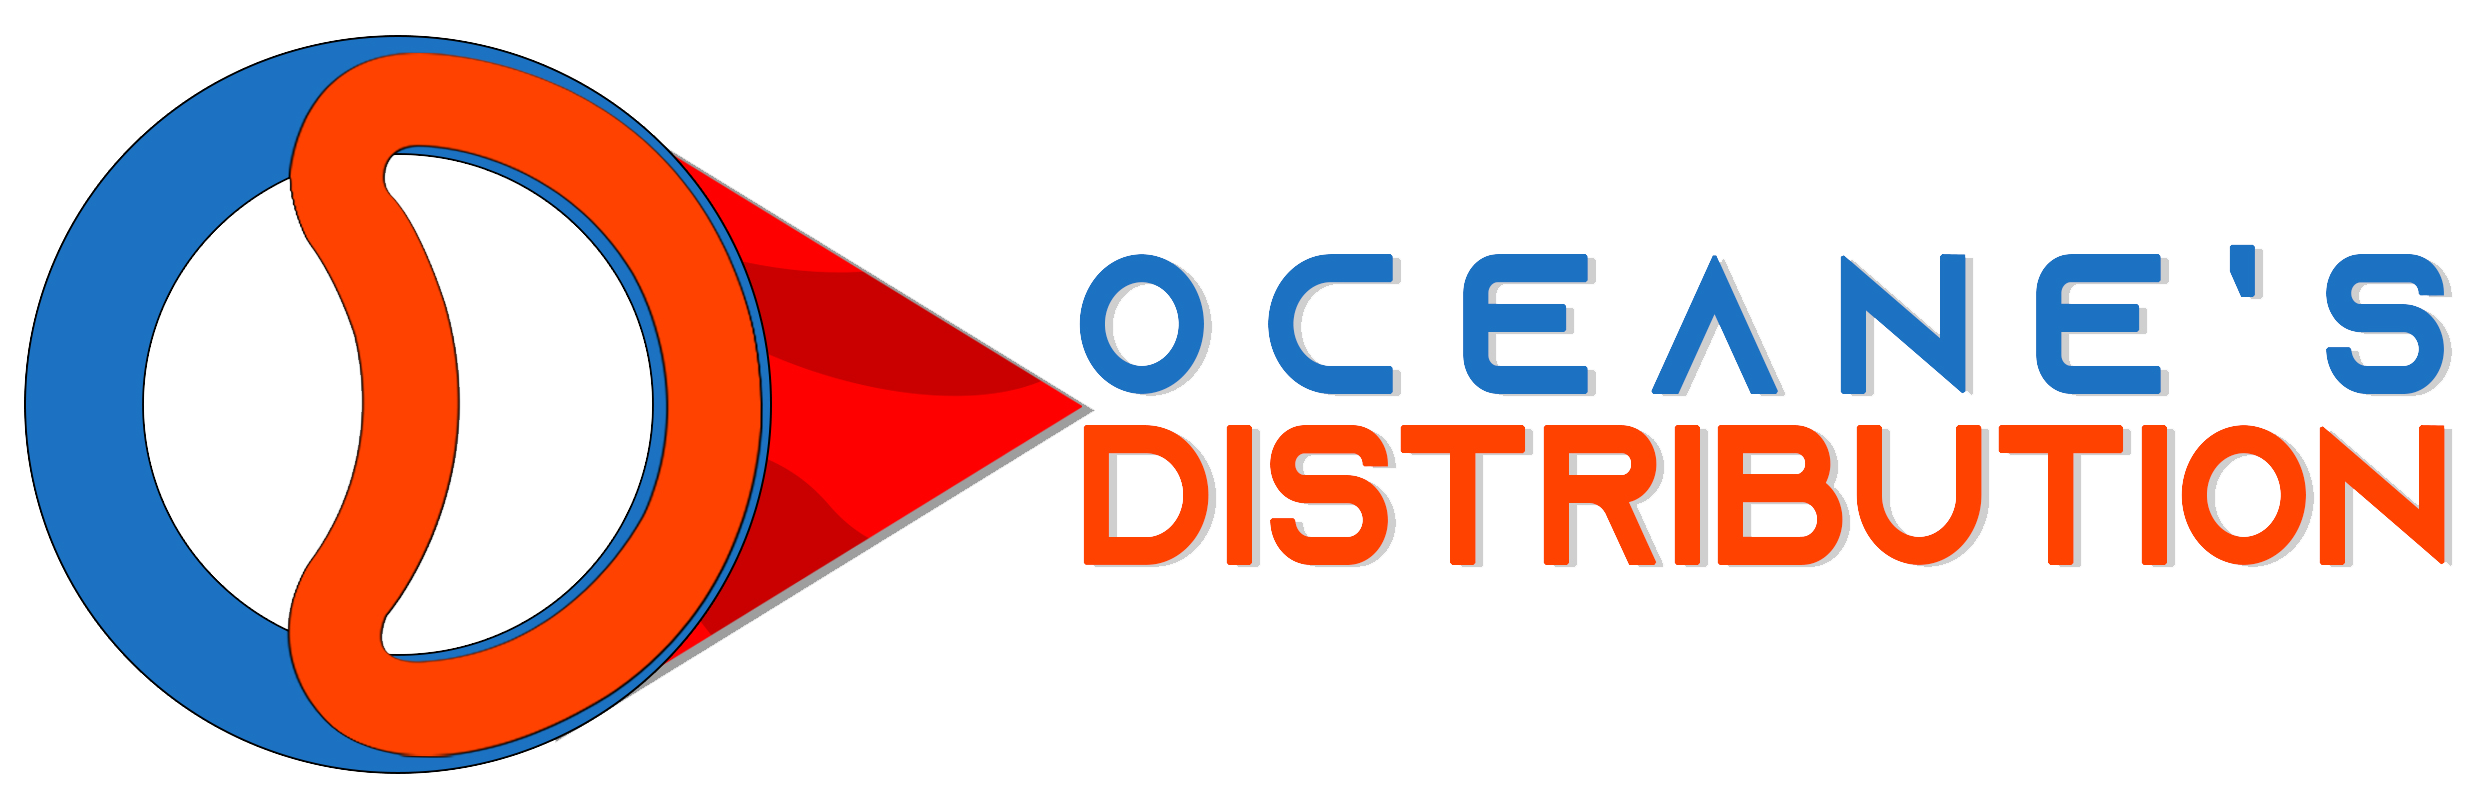 Logo Oceane's Distribution